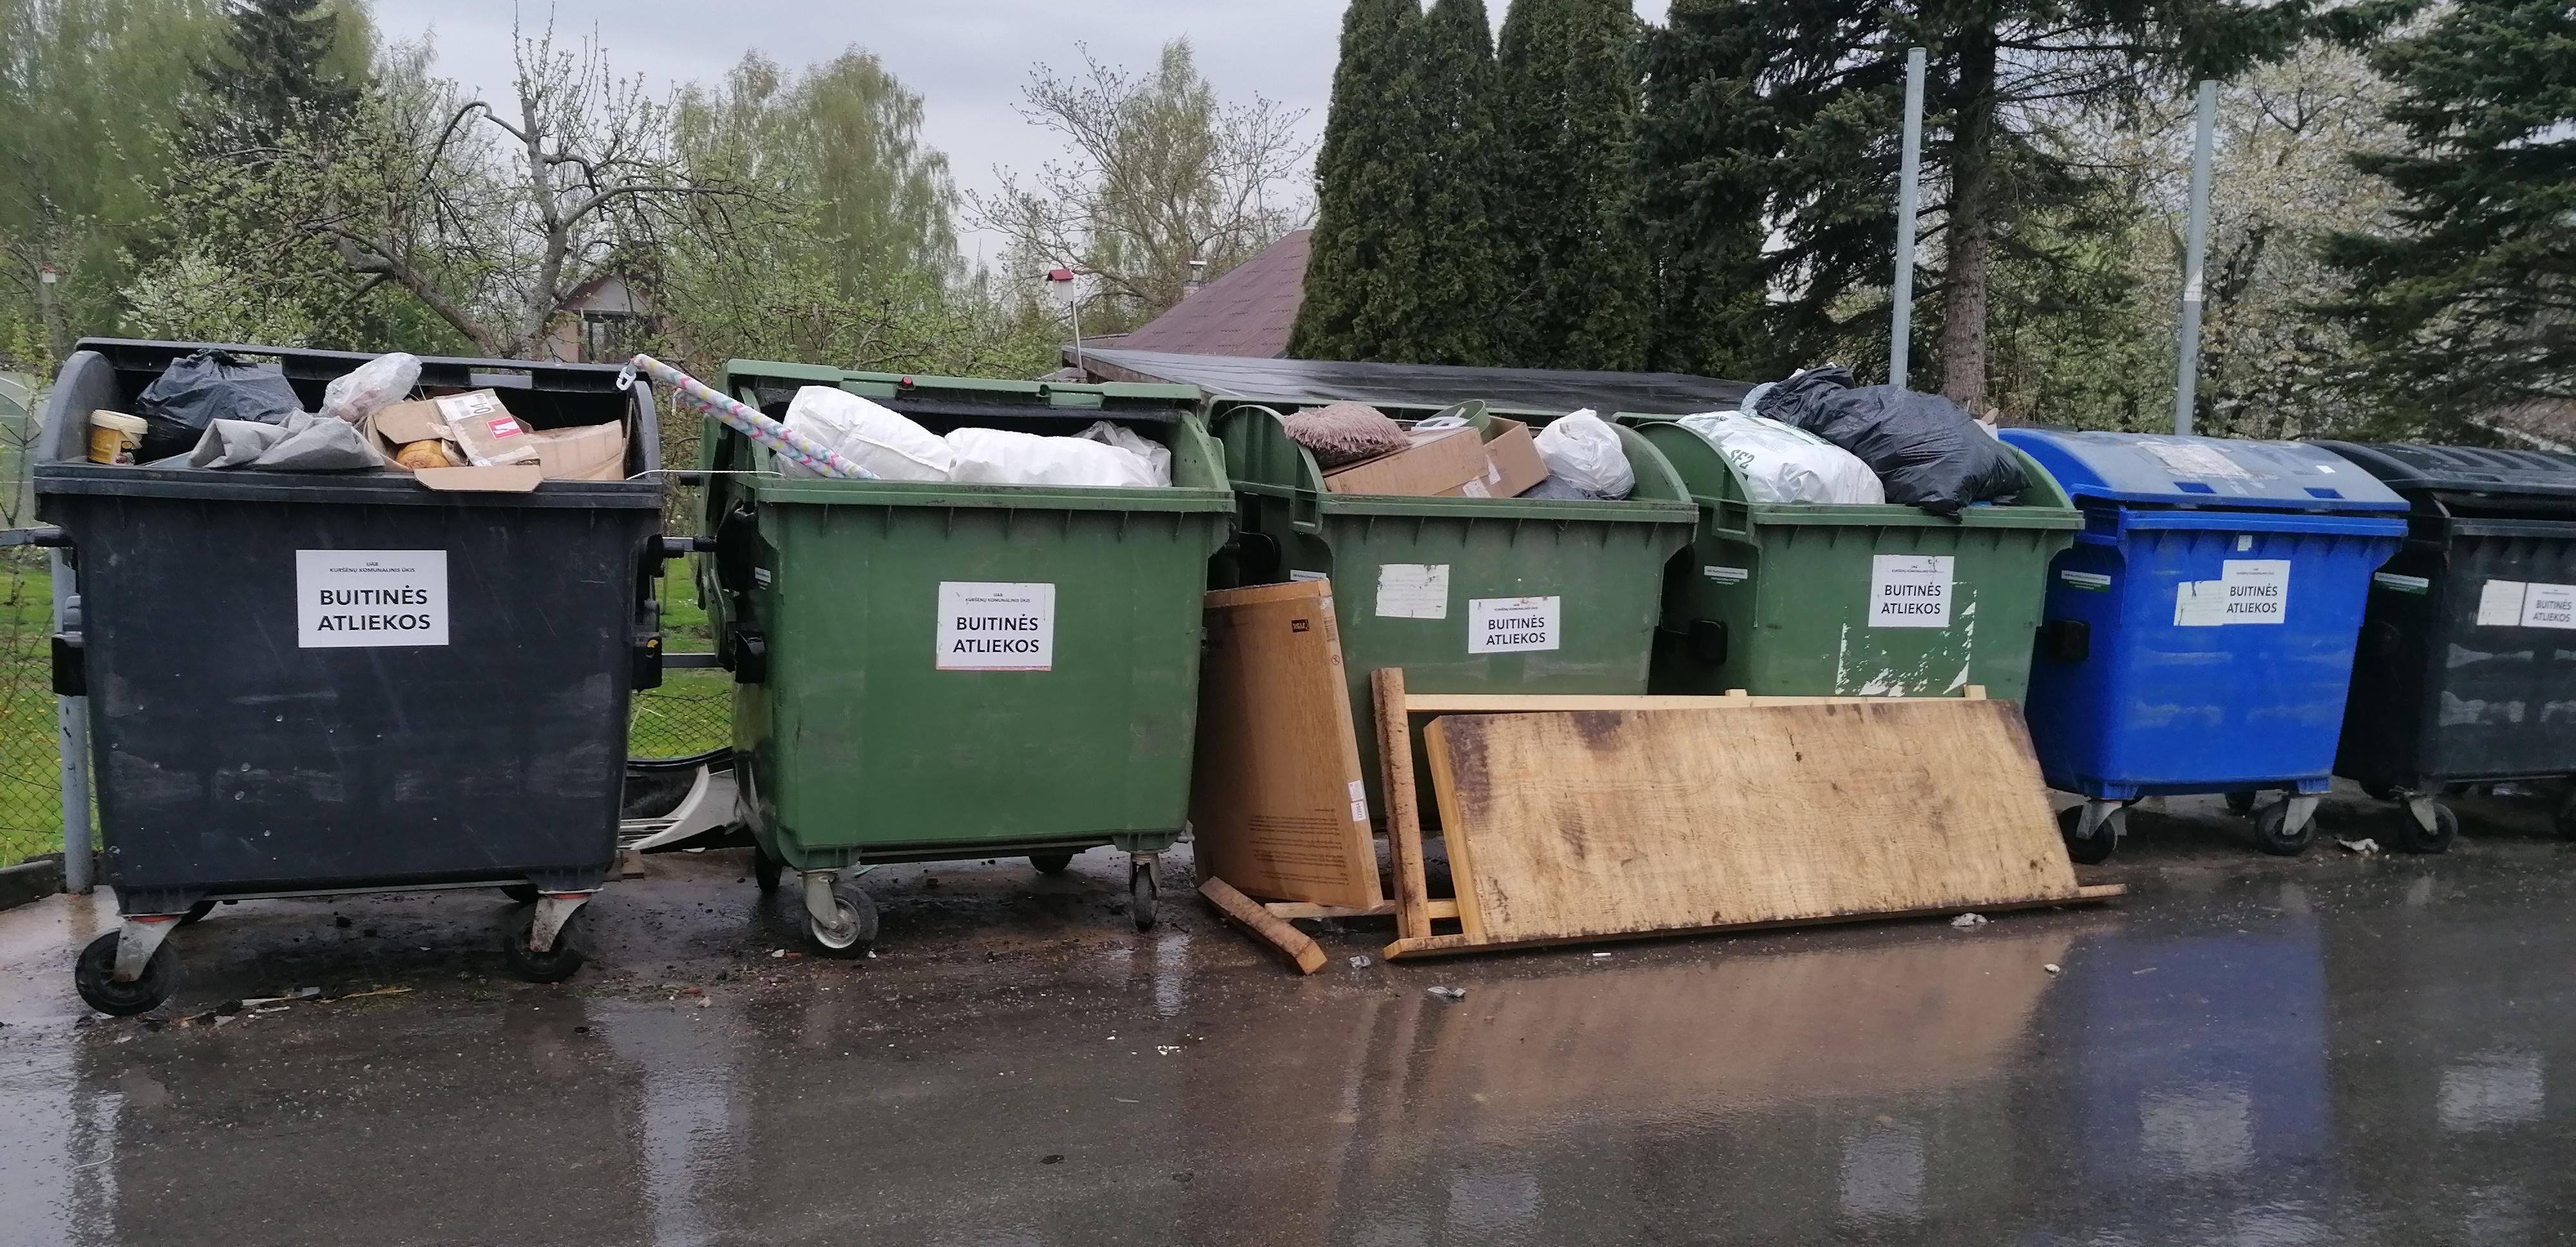 Rekonstrukcijai uždarius atliekų surinkimo aikštelę, gyventojai „krauna“ savo šiukšlynėlius